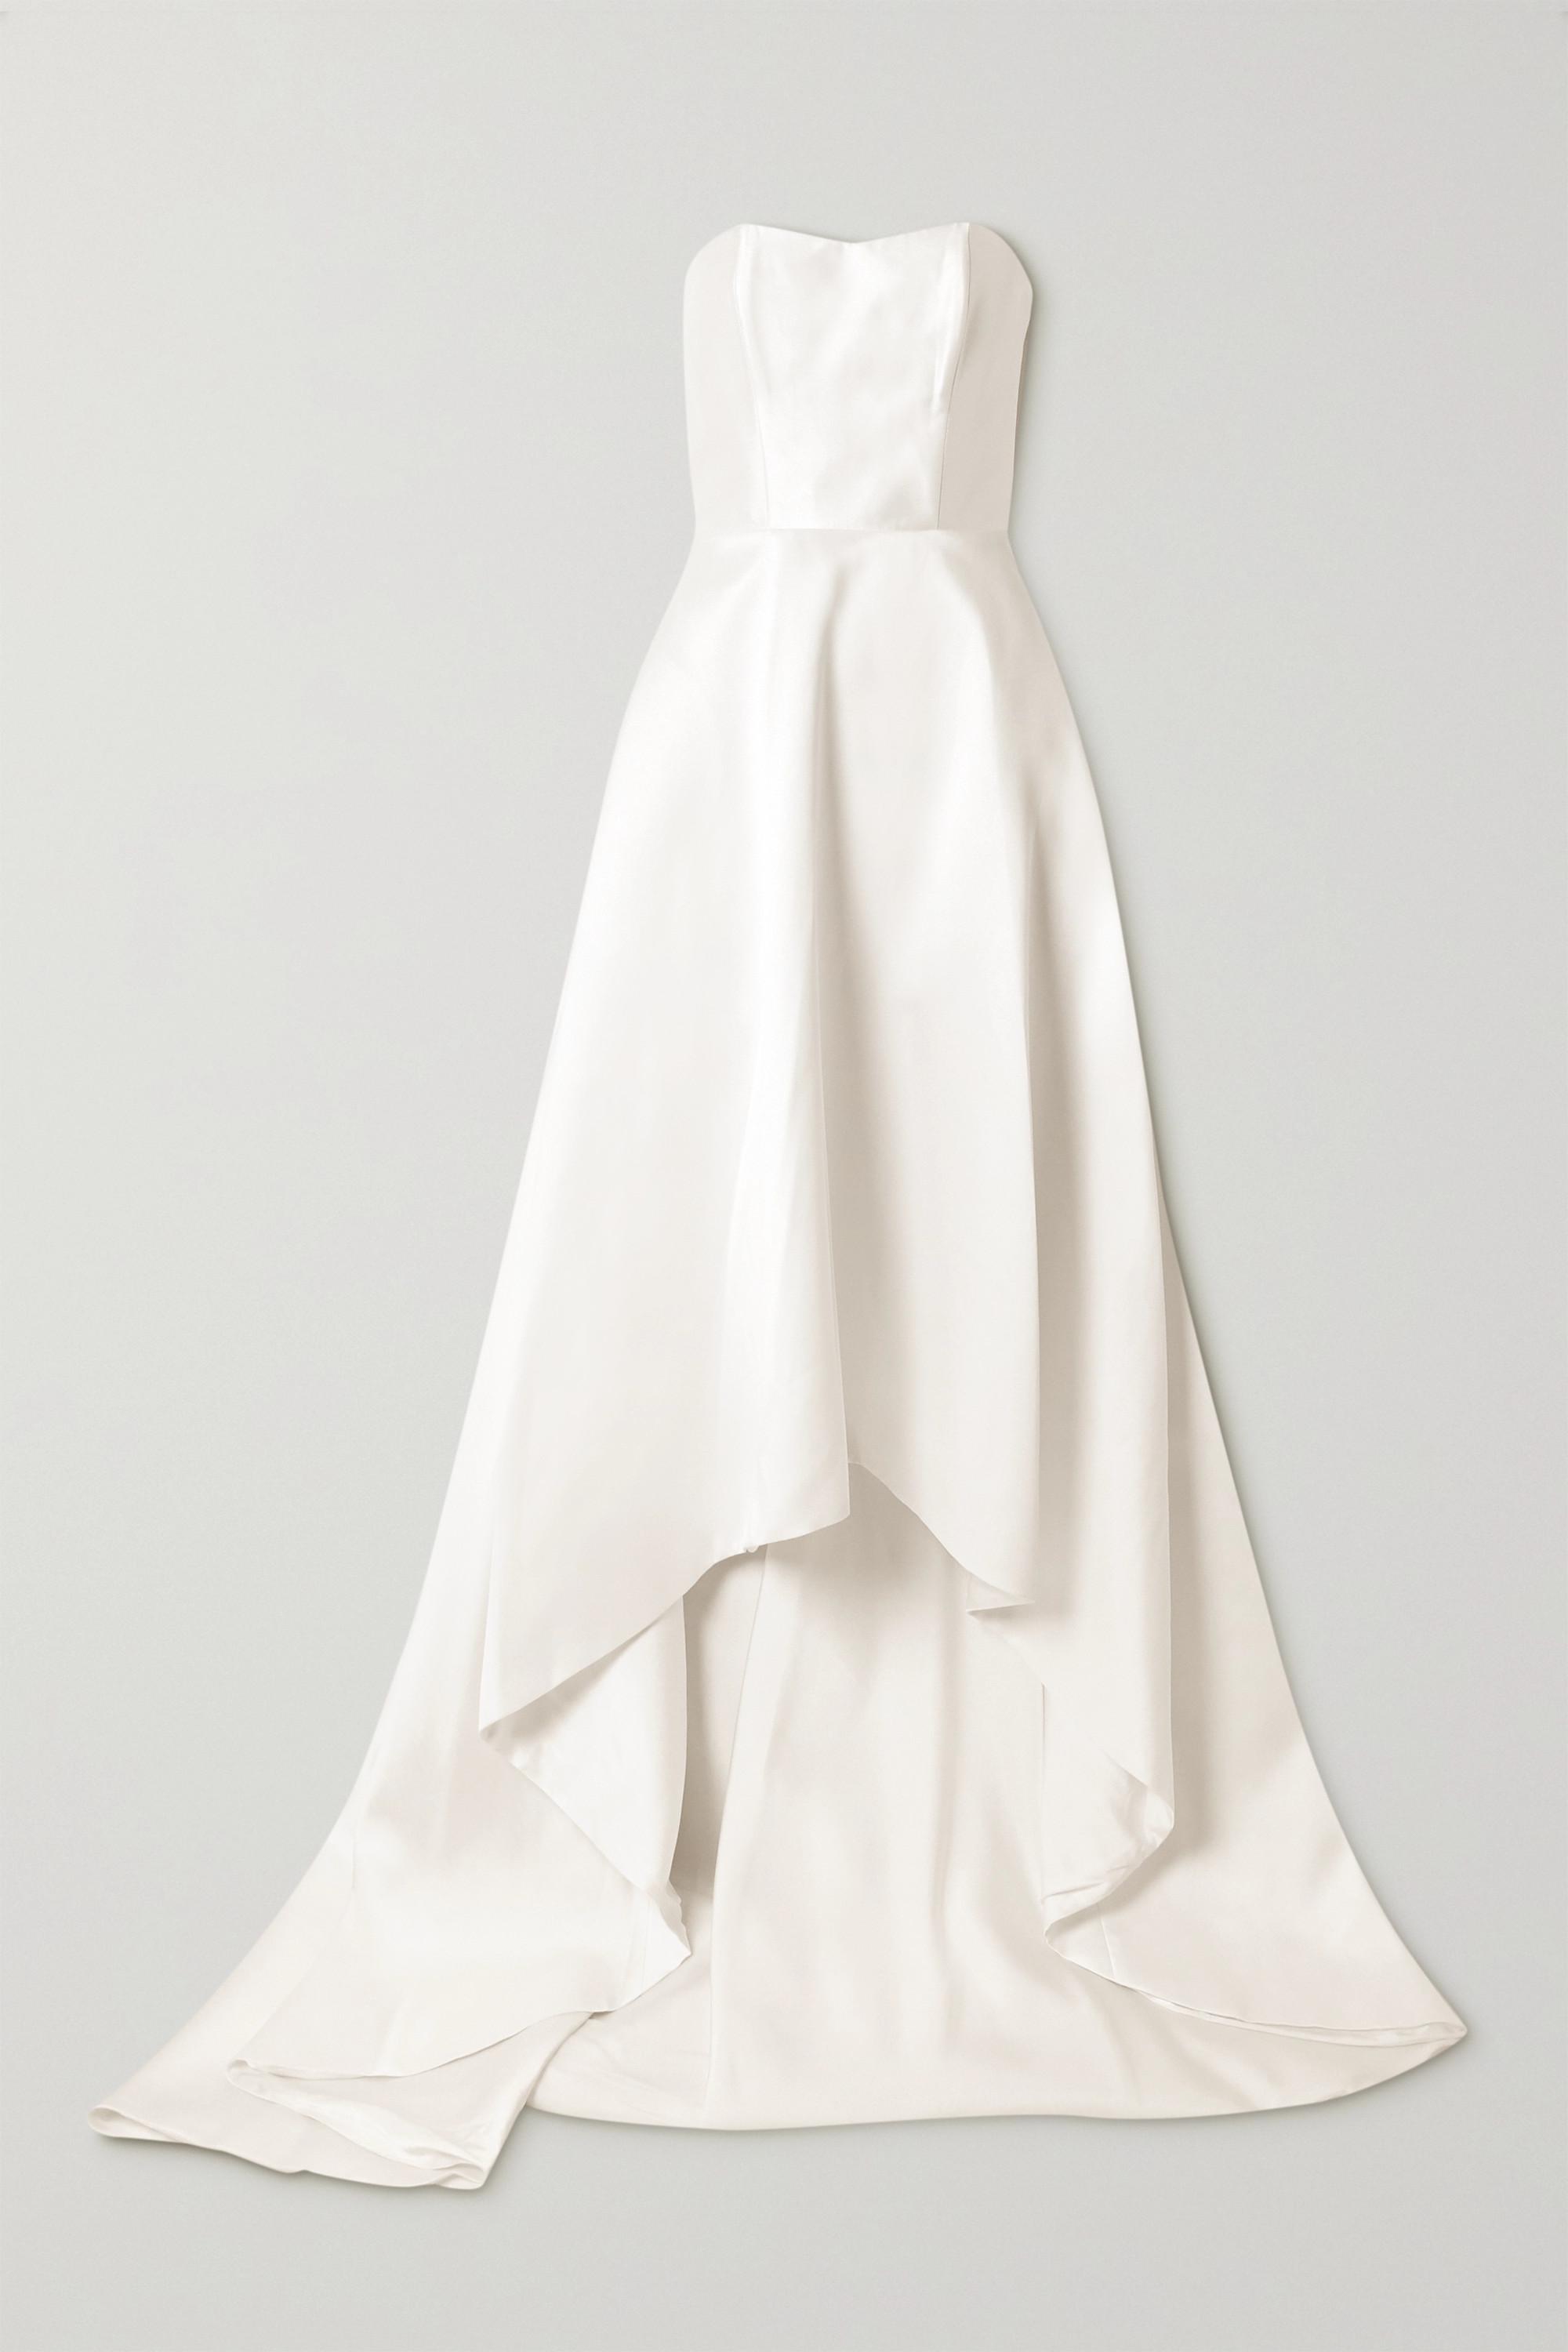 Halfpenny London Jackson Trägerlose, Asymmetrische Robe Aus Duchesse-satin  in Weiß | Lyst DE